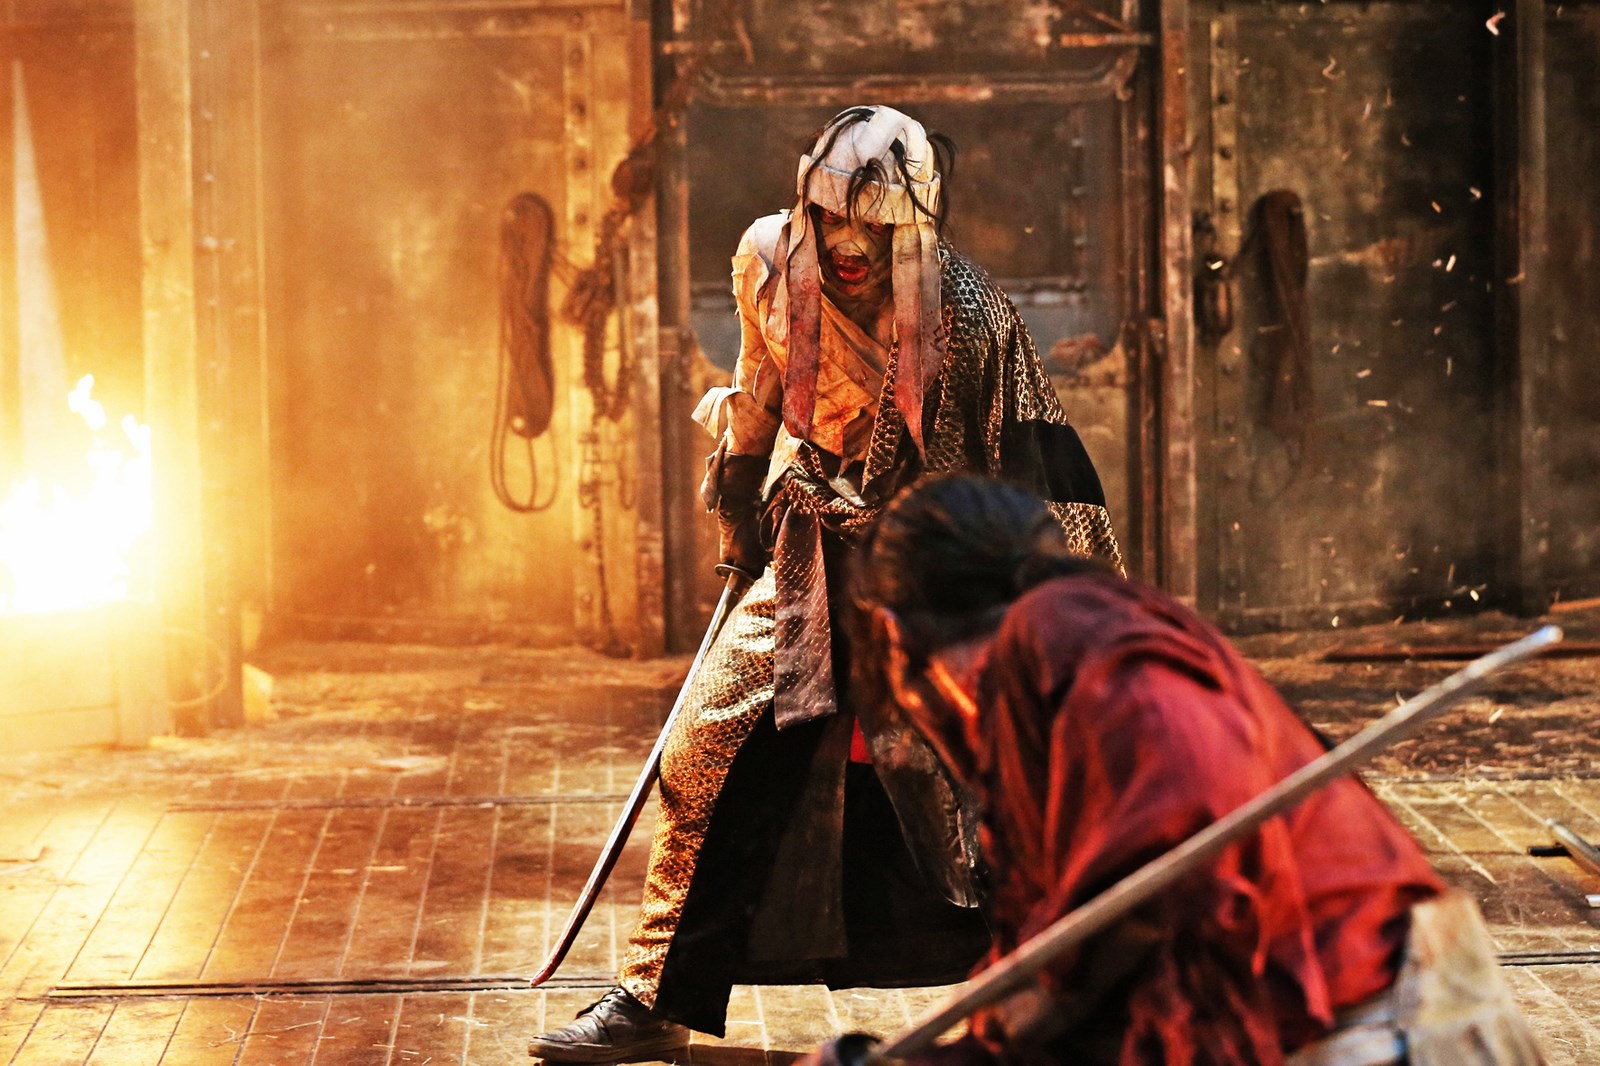 Rurôni Kenshin: Densetsu no Saigo-hen